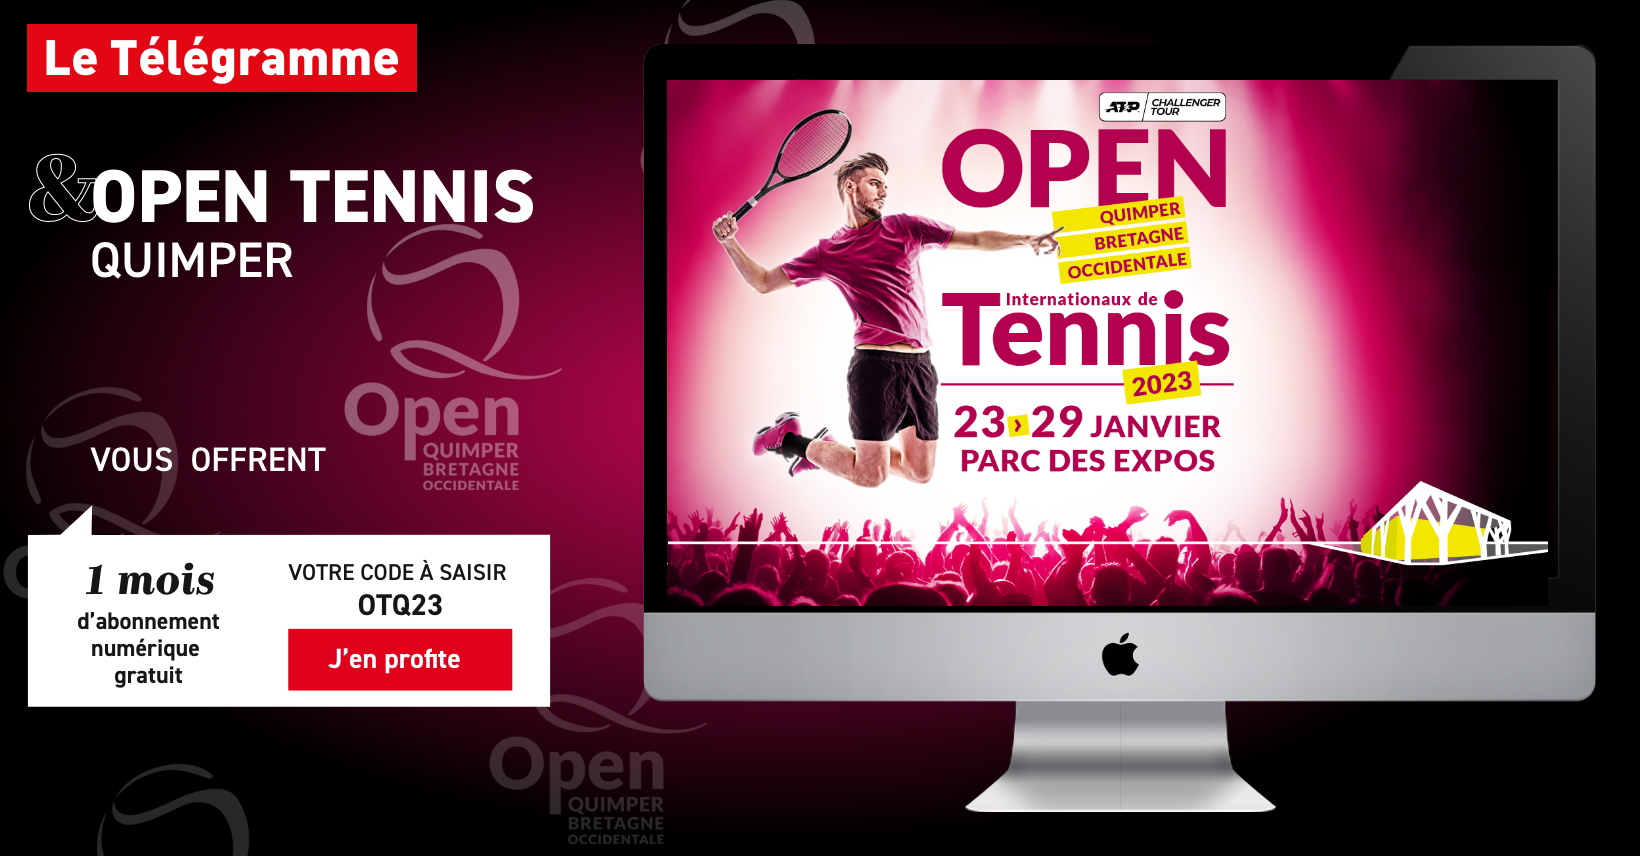 Open Quimper Bretagne Occidentale - ATP - 